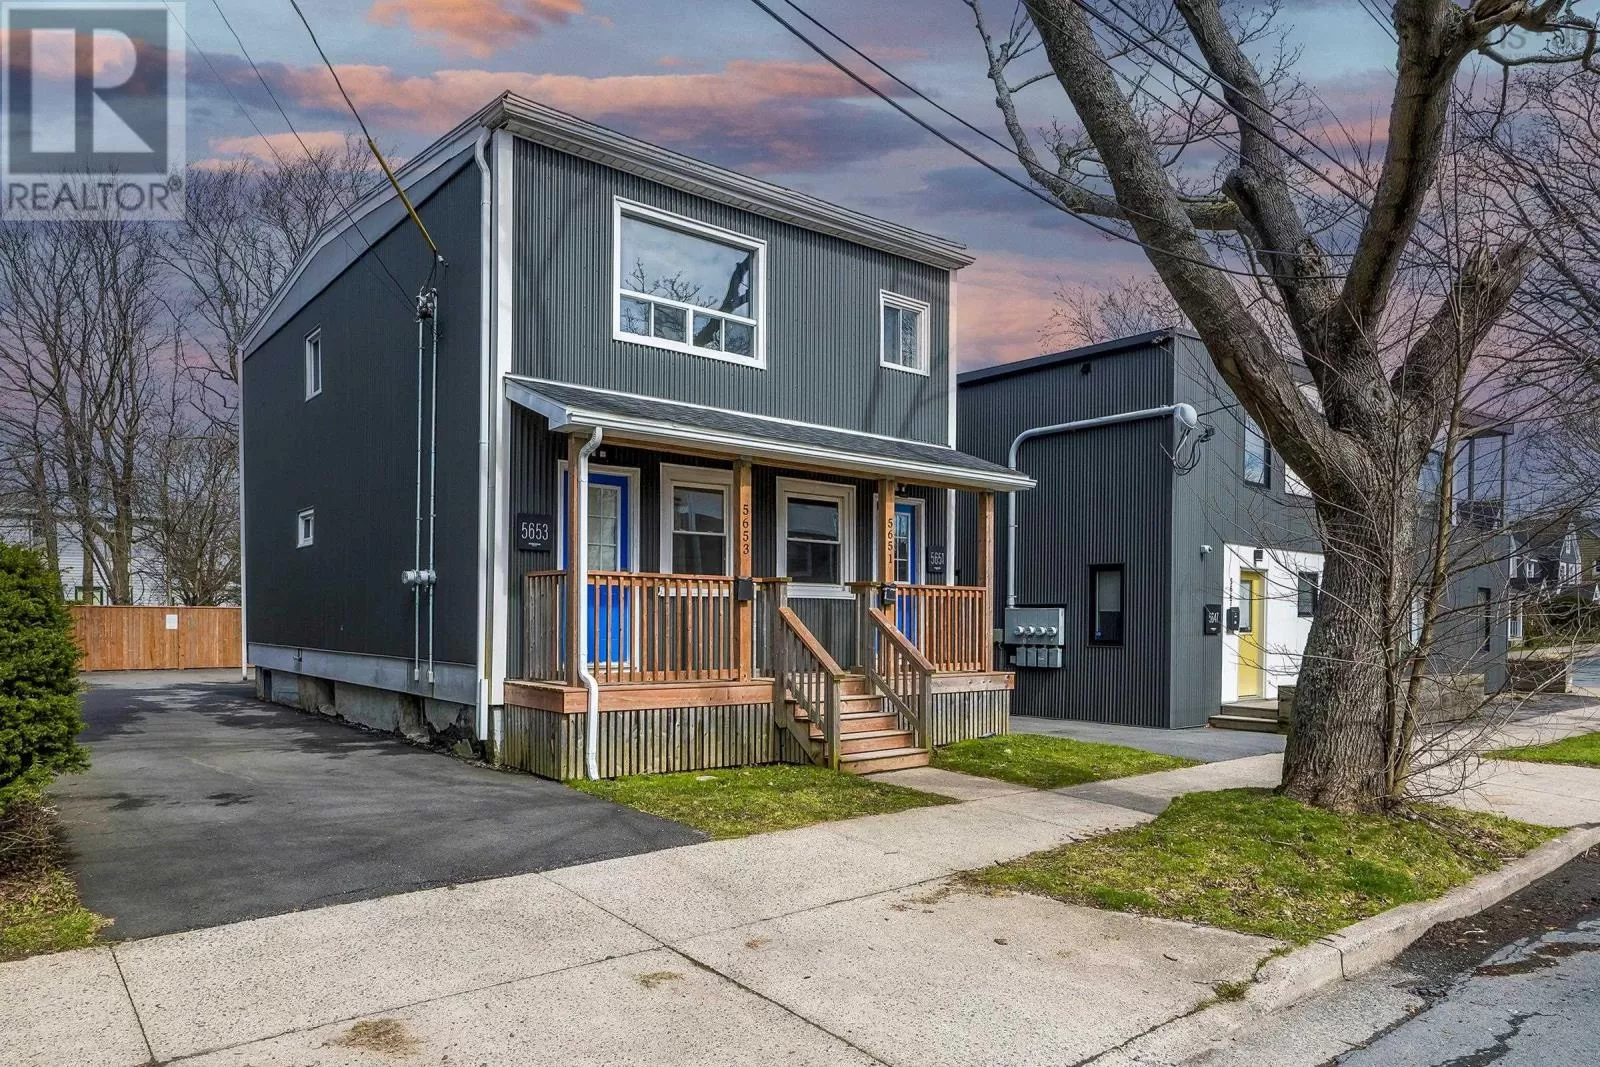 Duplex for rent: 5653/5651 Kane Street, Halifax, Nova Scotia B3K 2B5